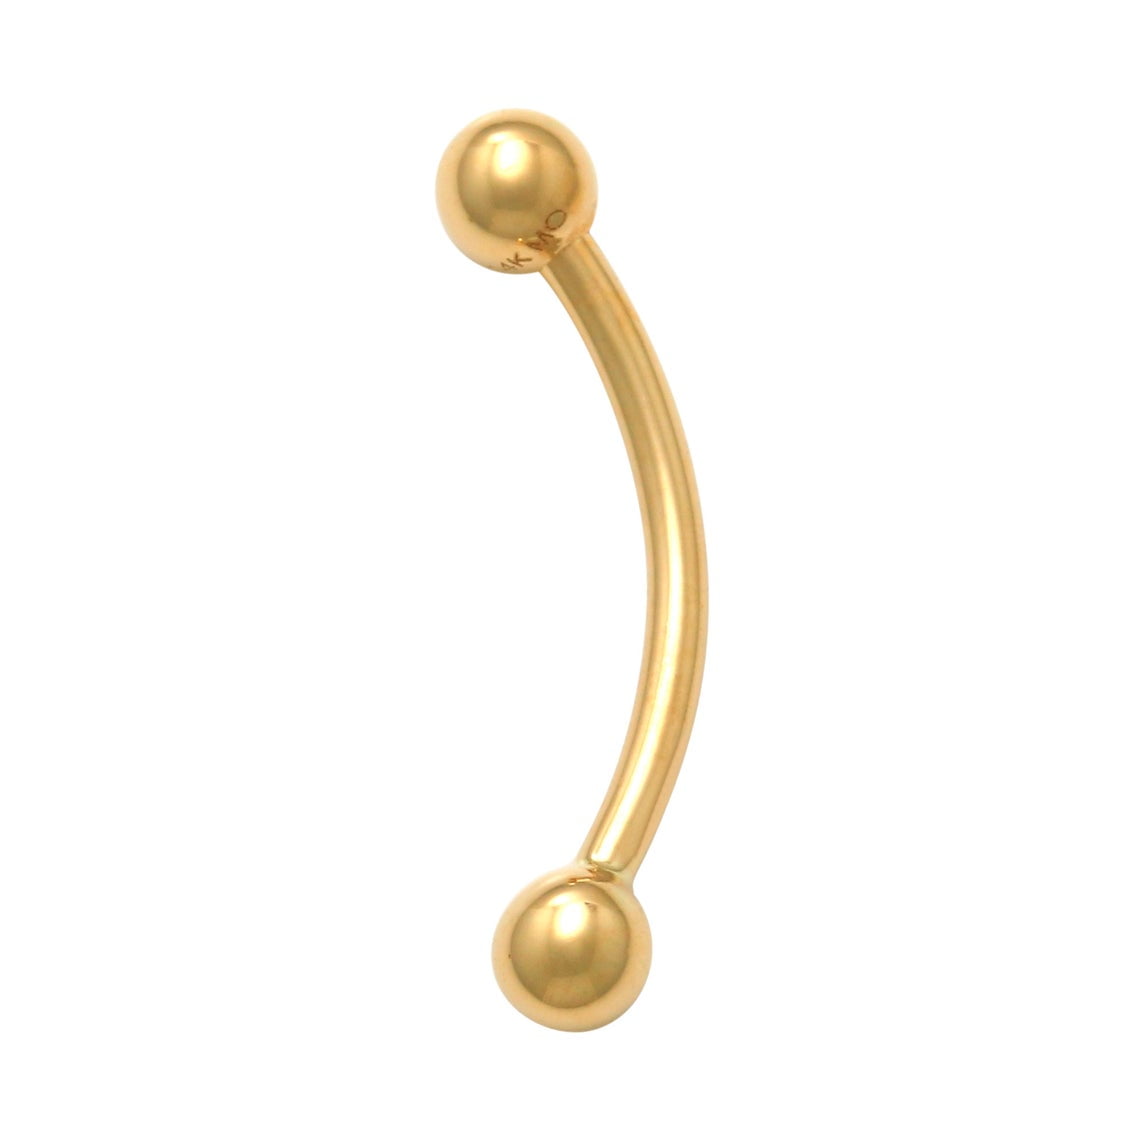 14K Solid Gold Plain Ball Bent Barbell Eyebrow Bar Ear Piercing Jewelry 16 Gauge